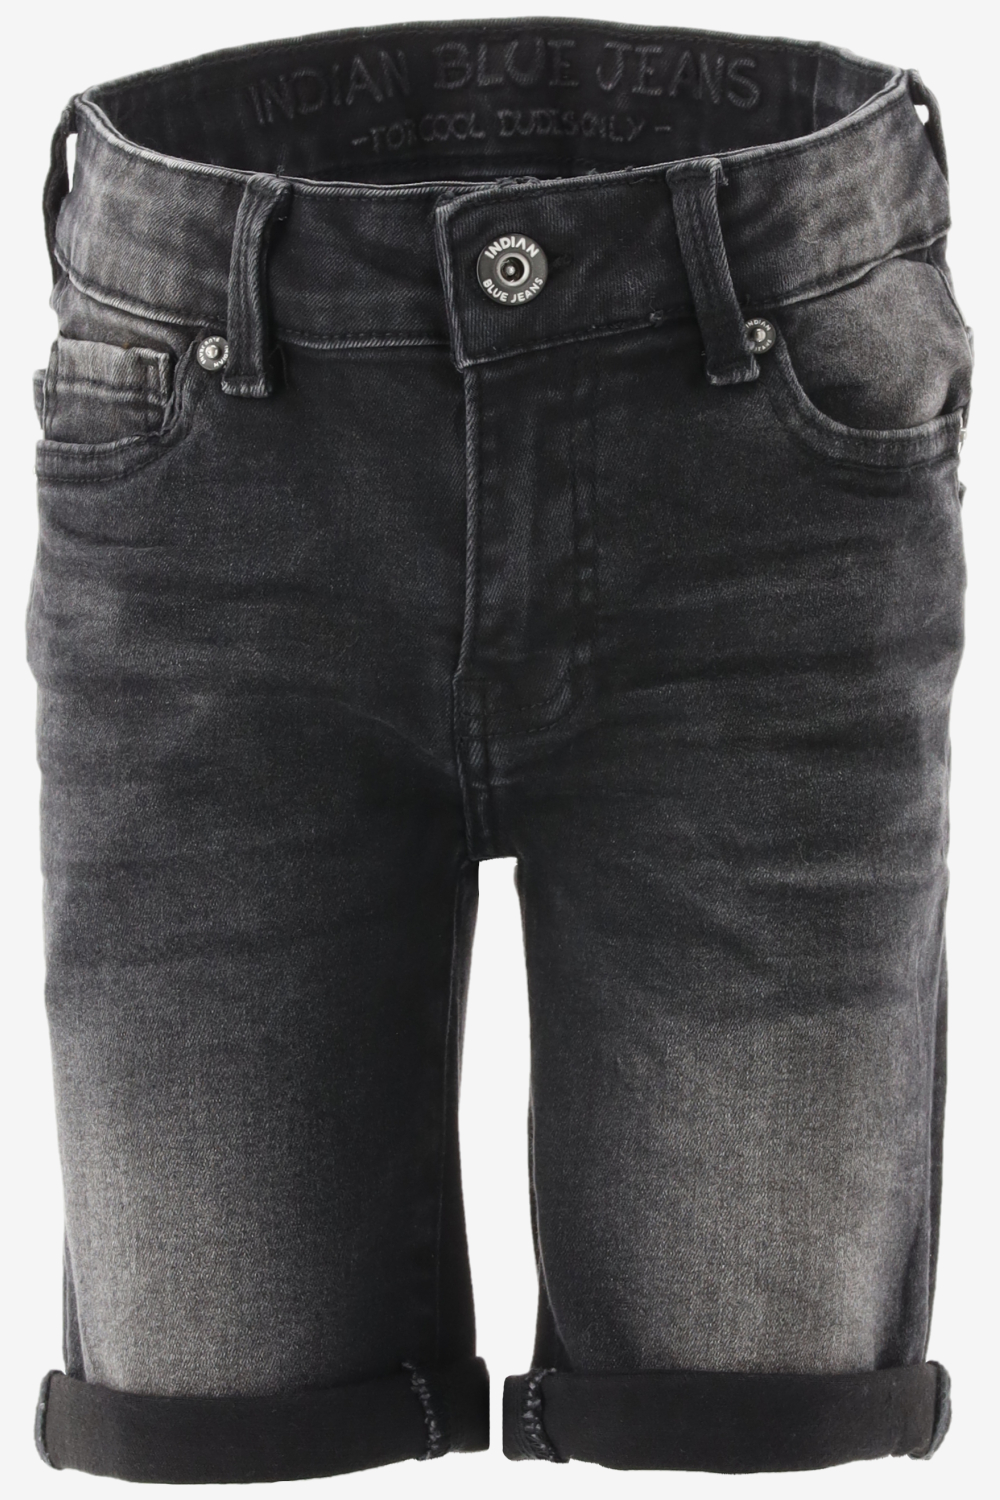 Indian Blue Jeans Black Andy Short Broeken Jongens - Zwart - Maat 146